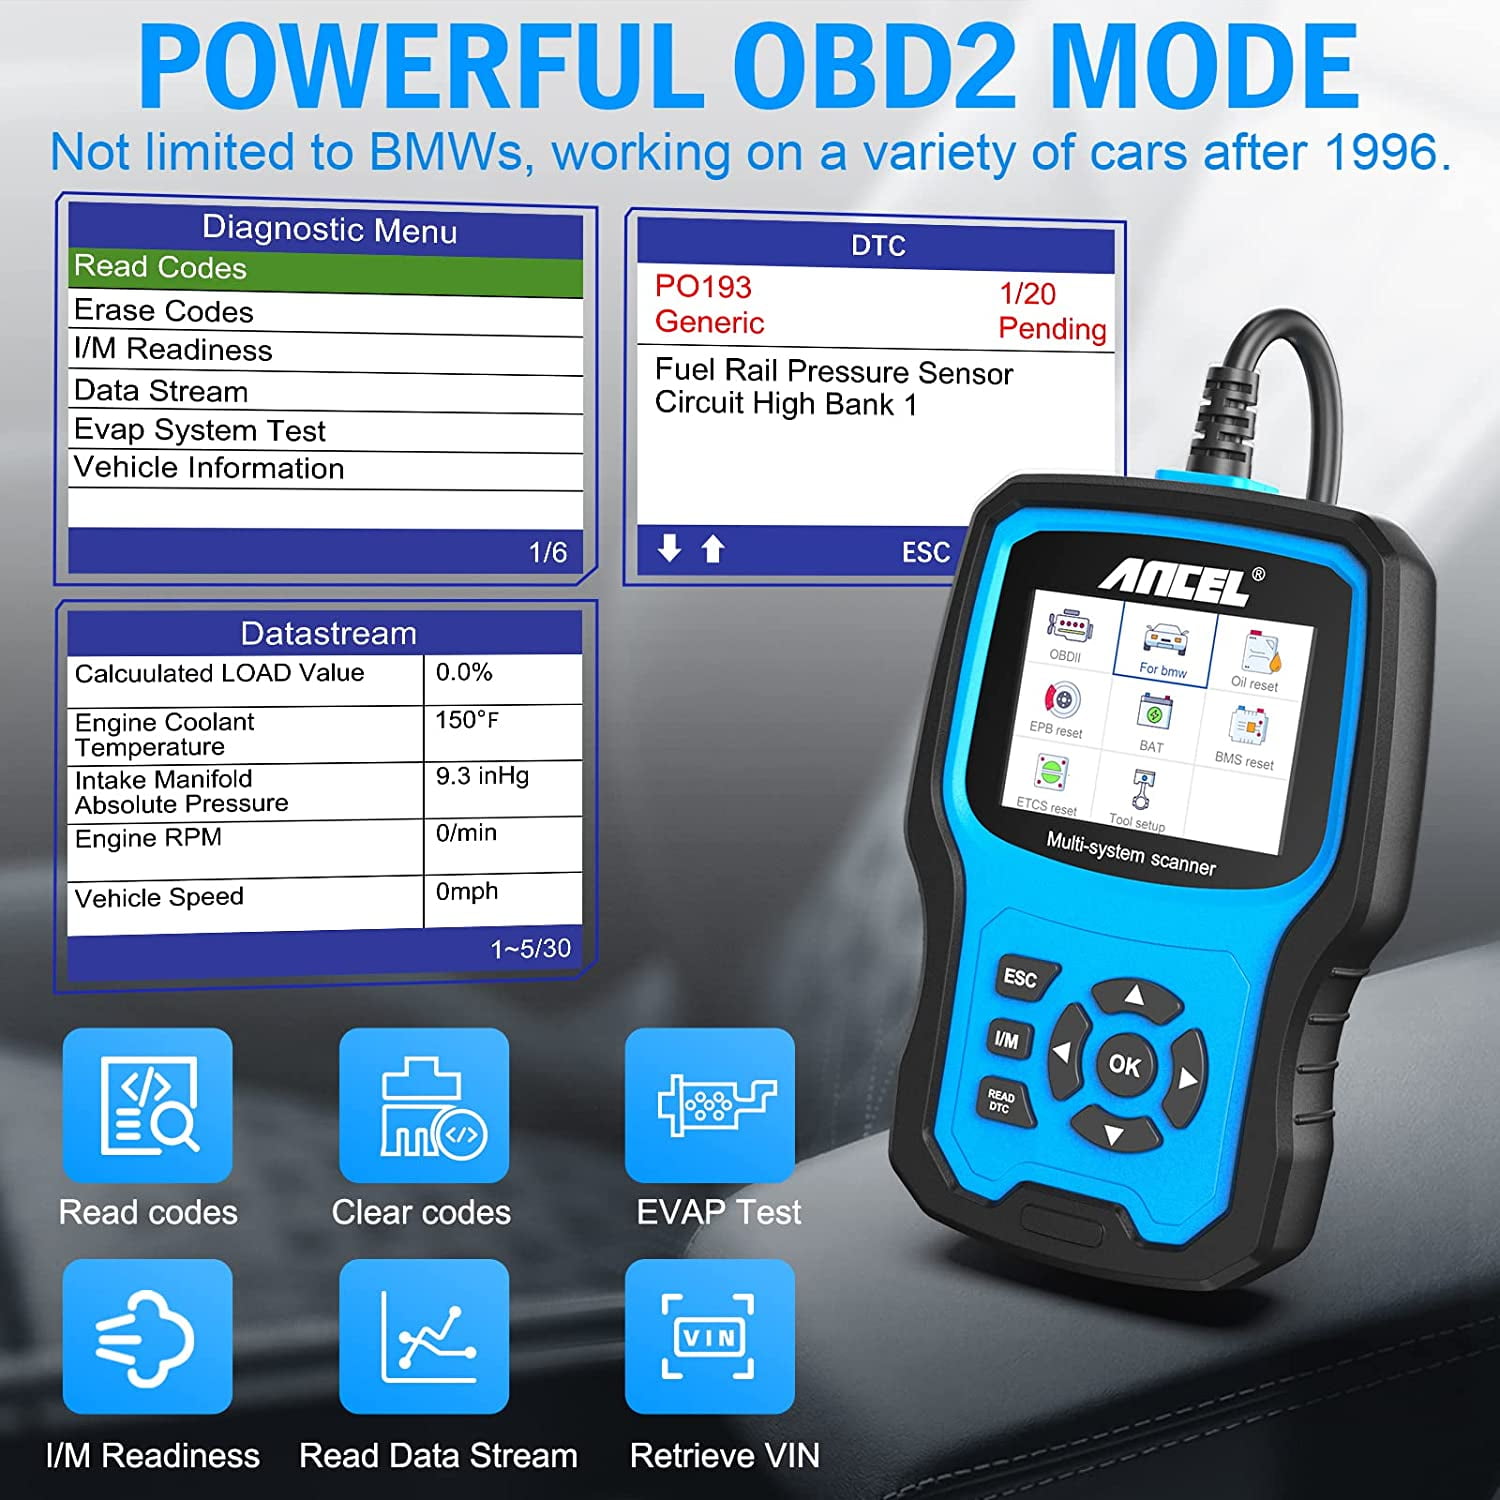 VEVOR OBD2 Scanner Diagnostic Tool Fit for BMW Full Systems